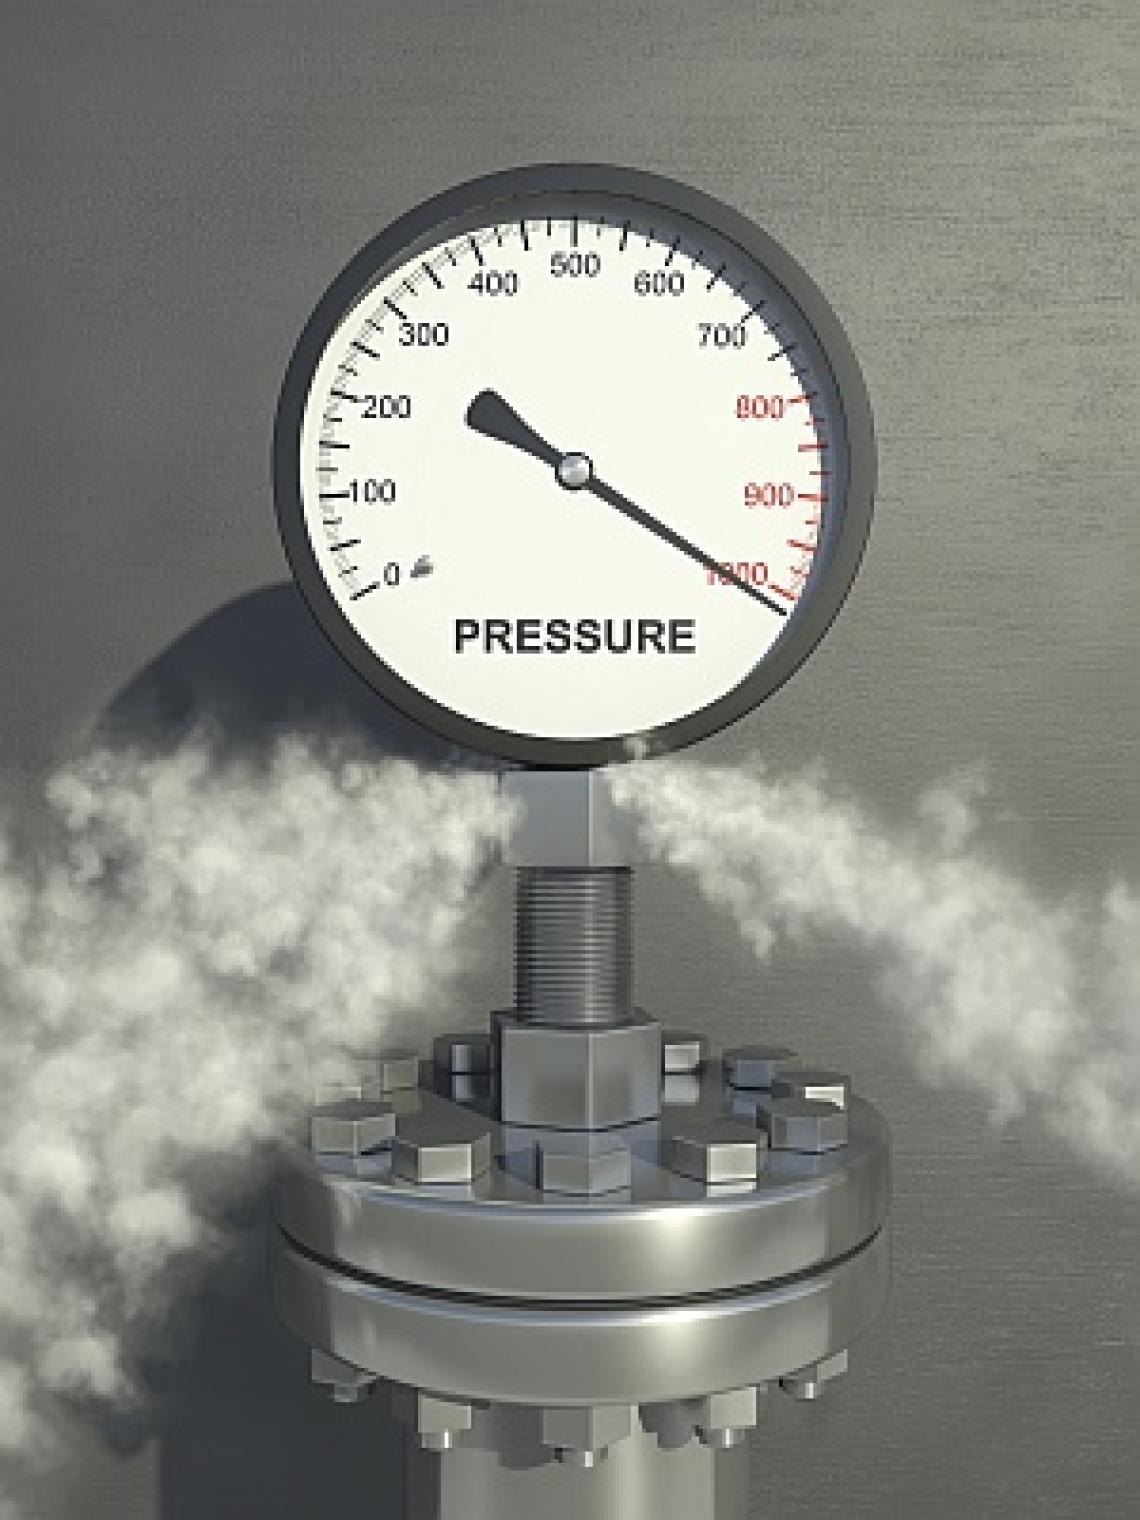 Pressure in a steam фото 87